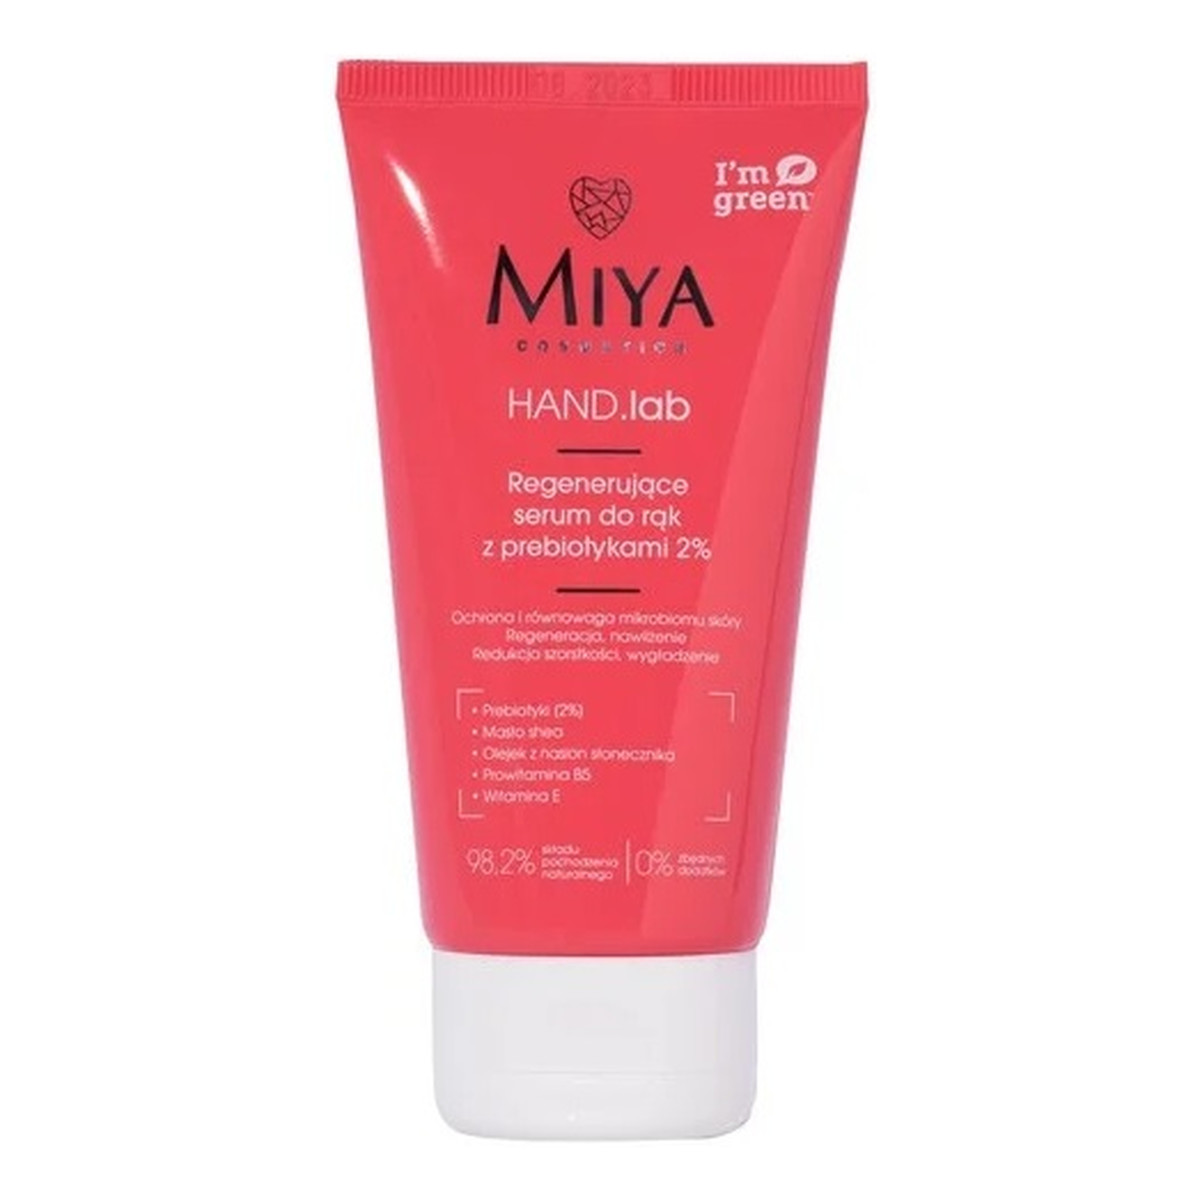 Miya Cosmetics Hand.lab regenerujące serum do rąk z prebiotykami 2% 75ml